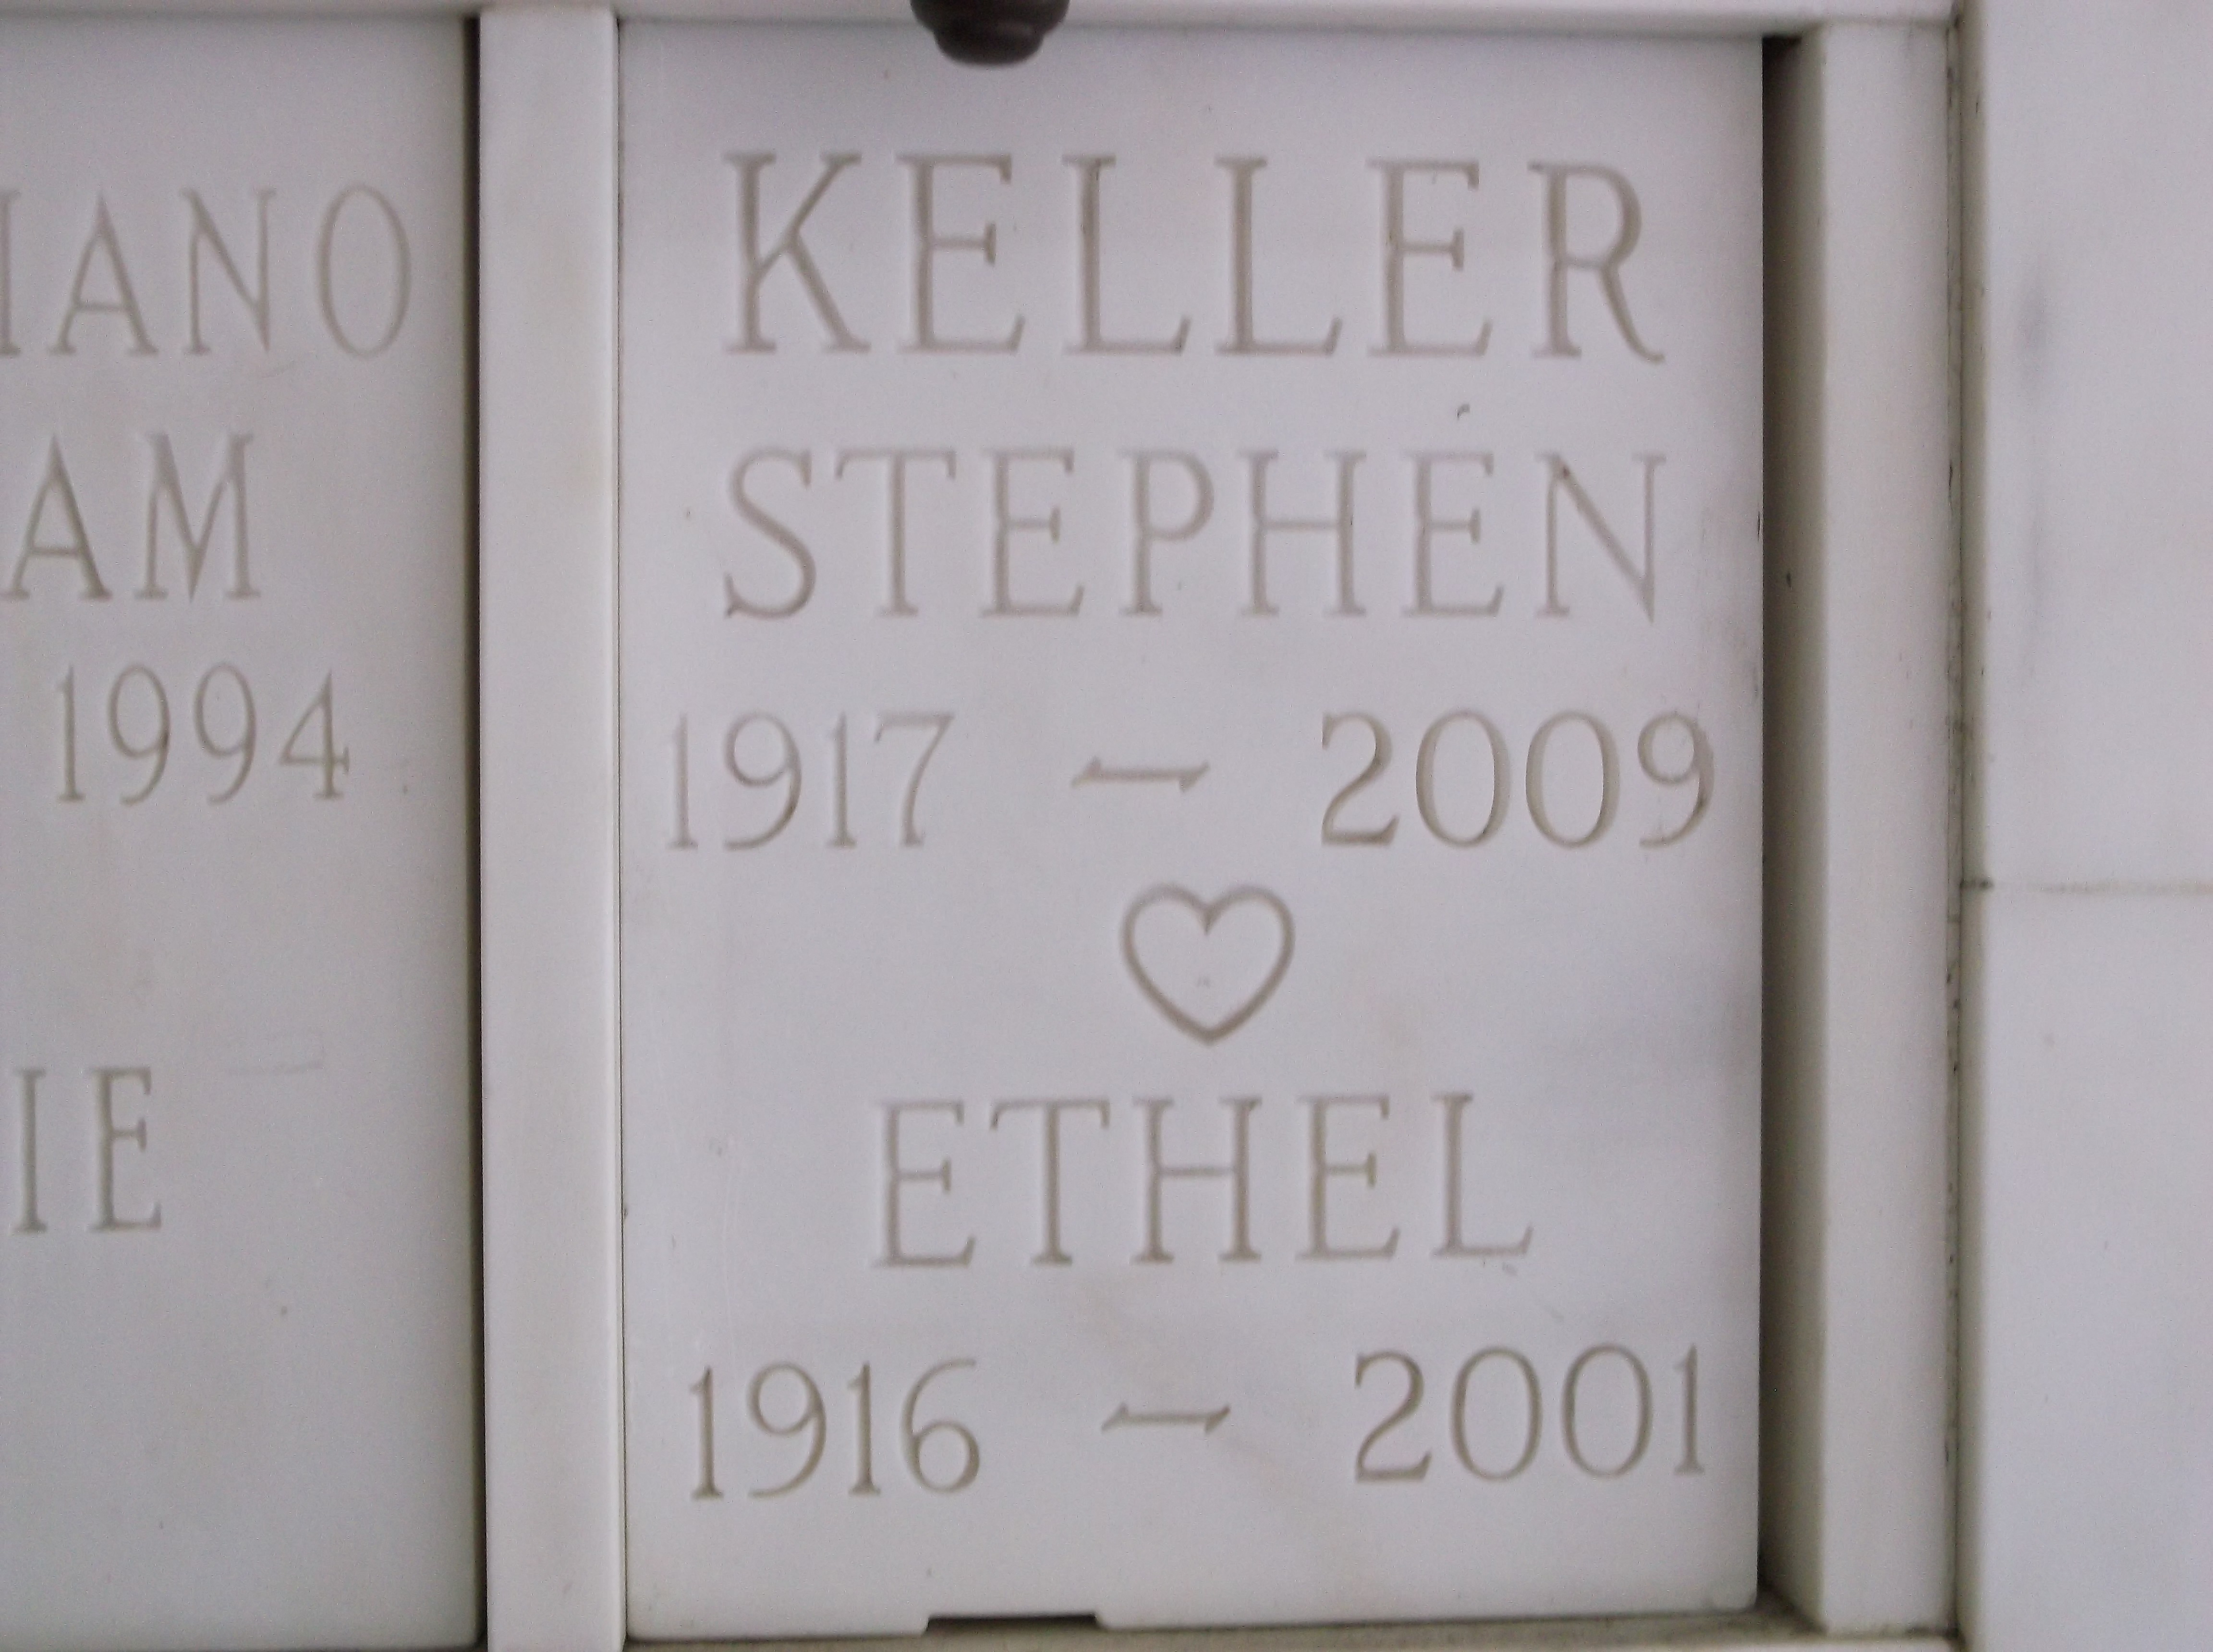 Stephen Keller